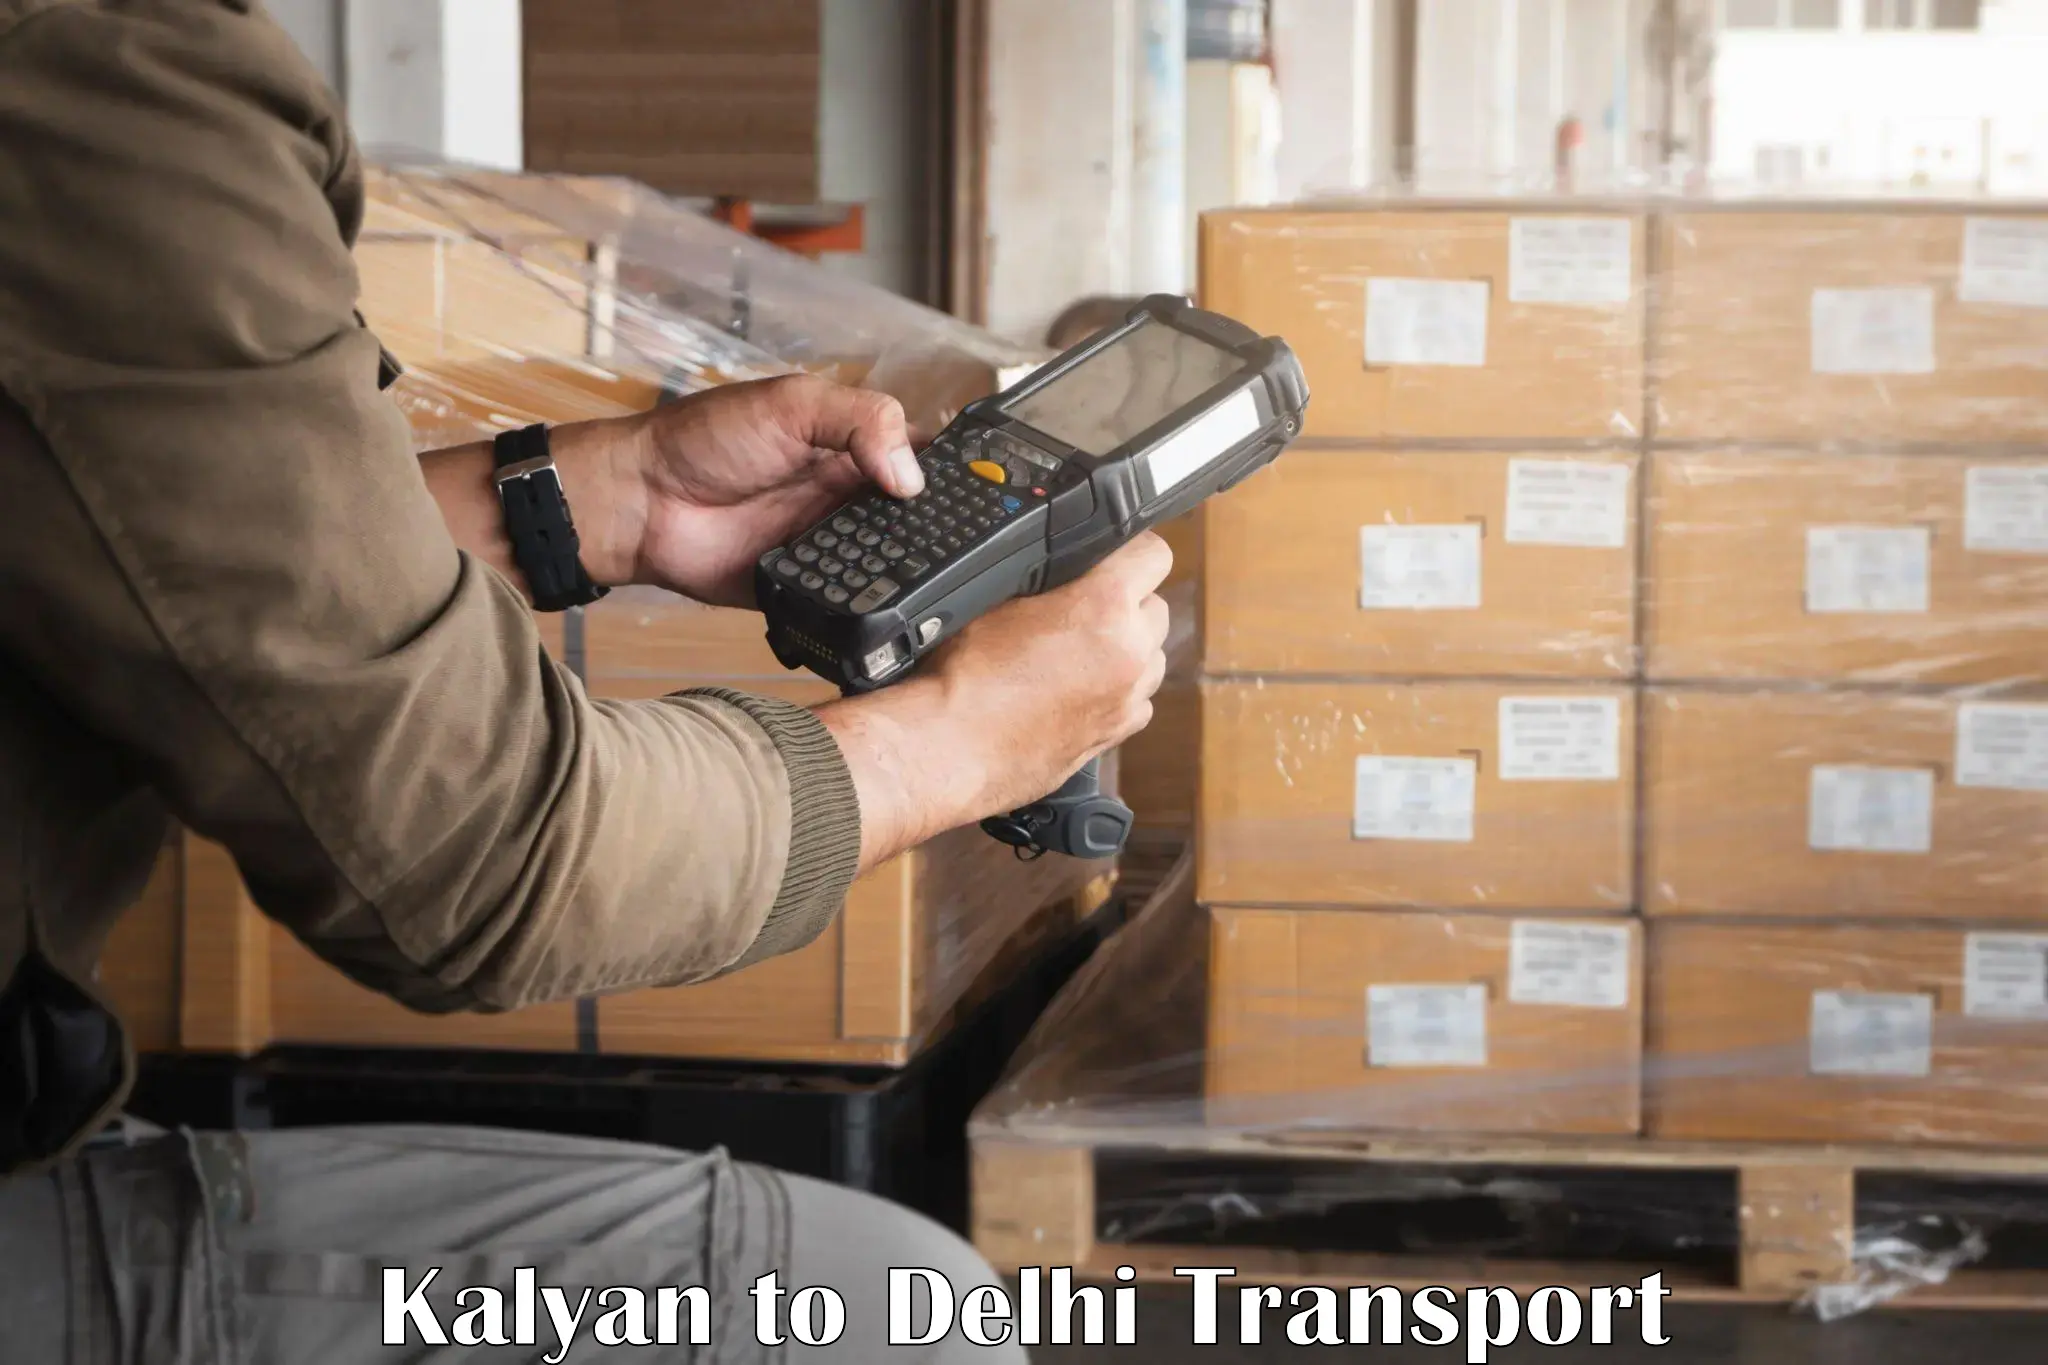 Shipping partner Kalyan to NCR